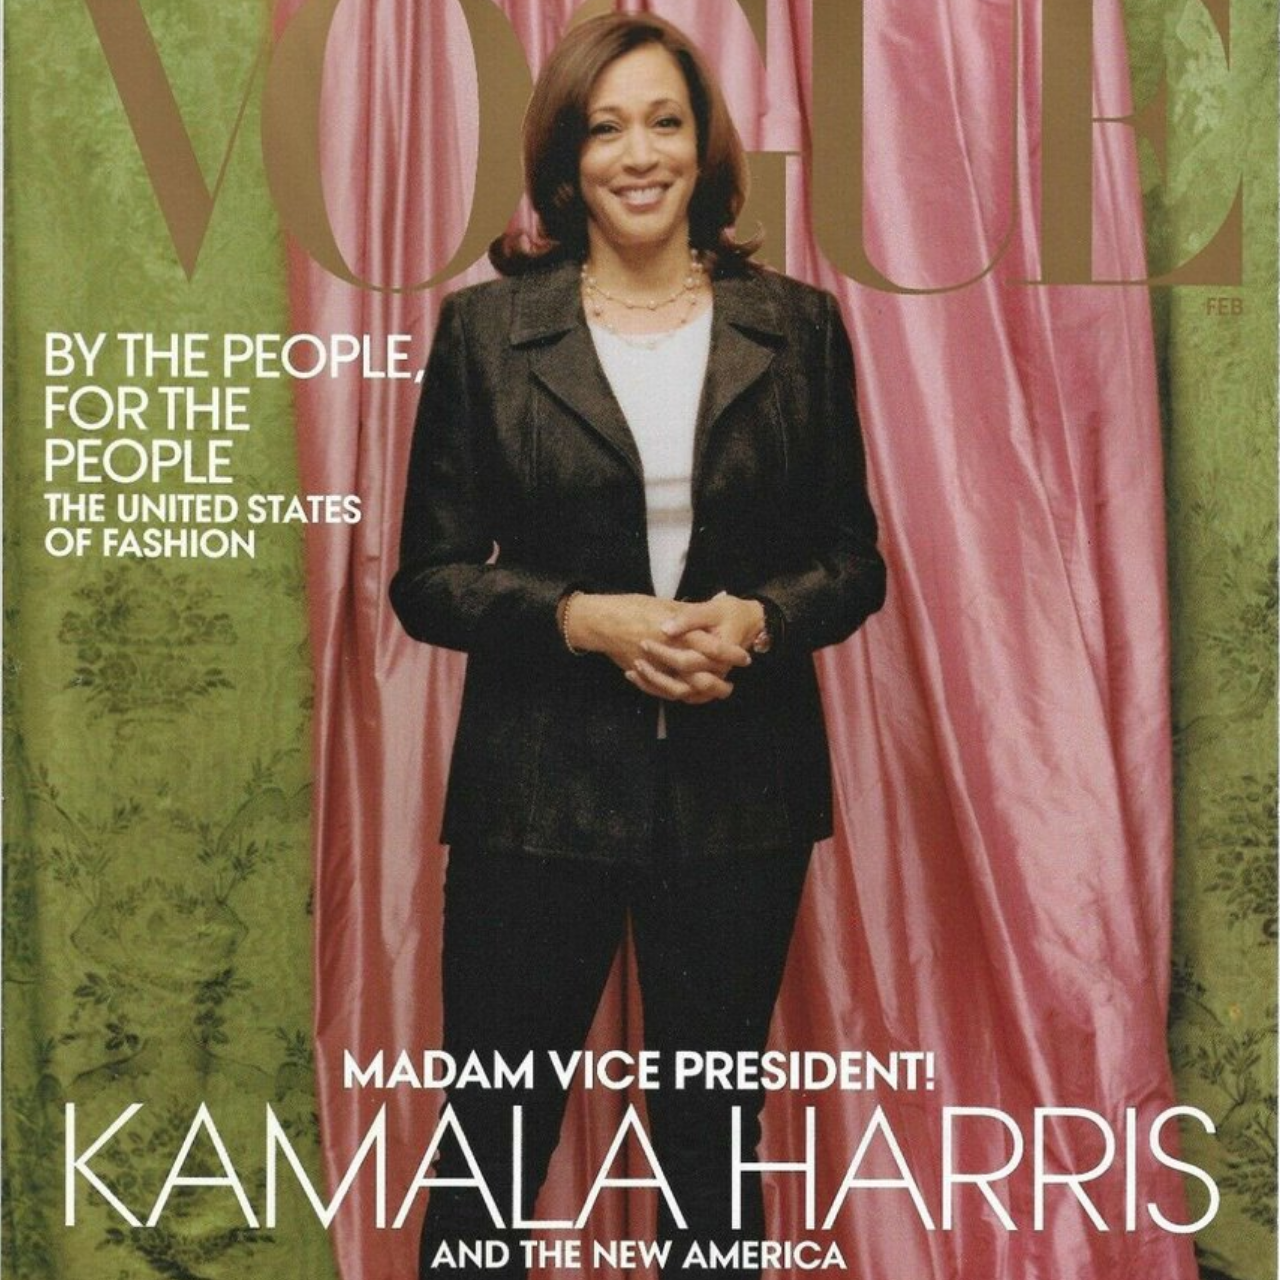 Vogue Cover Created an Uproar Over Kamala Harris